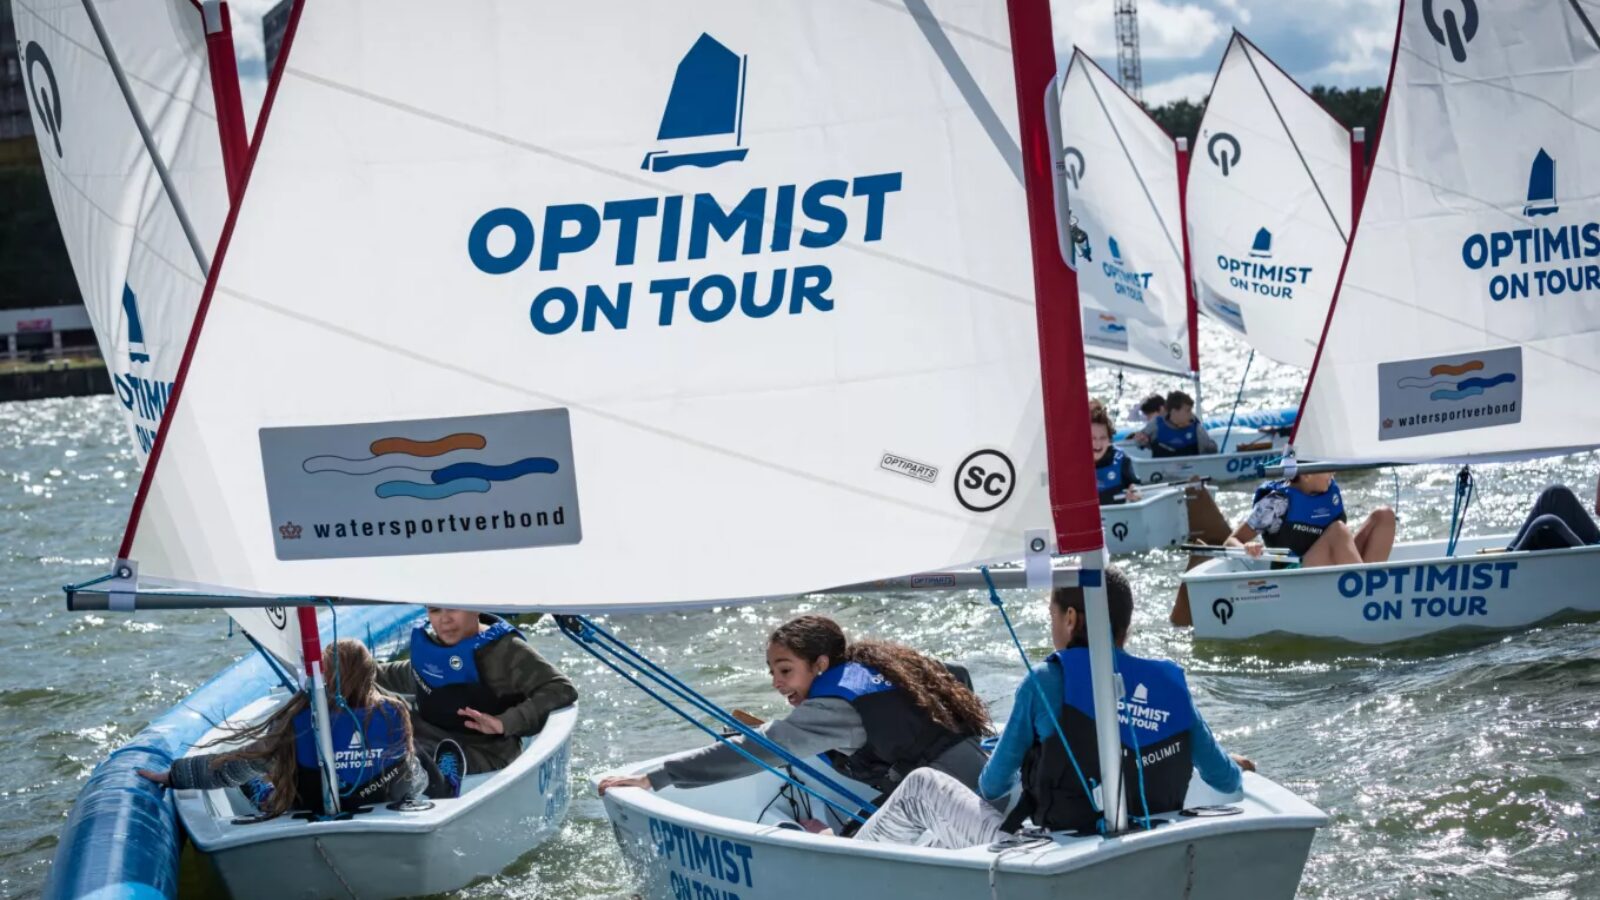 Maak gratis kennis met watersport tijdens de Optimist on Tour in Meerstad